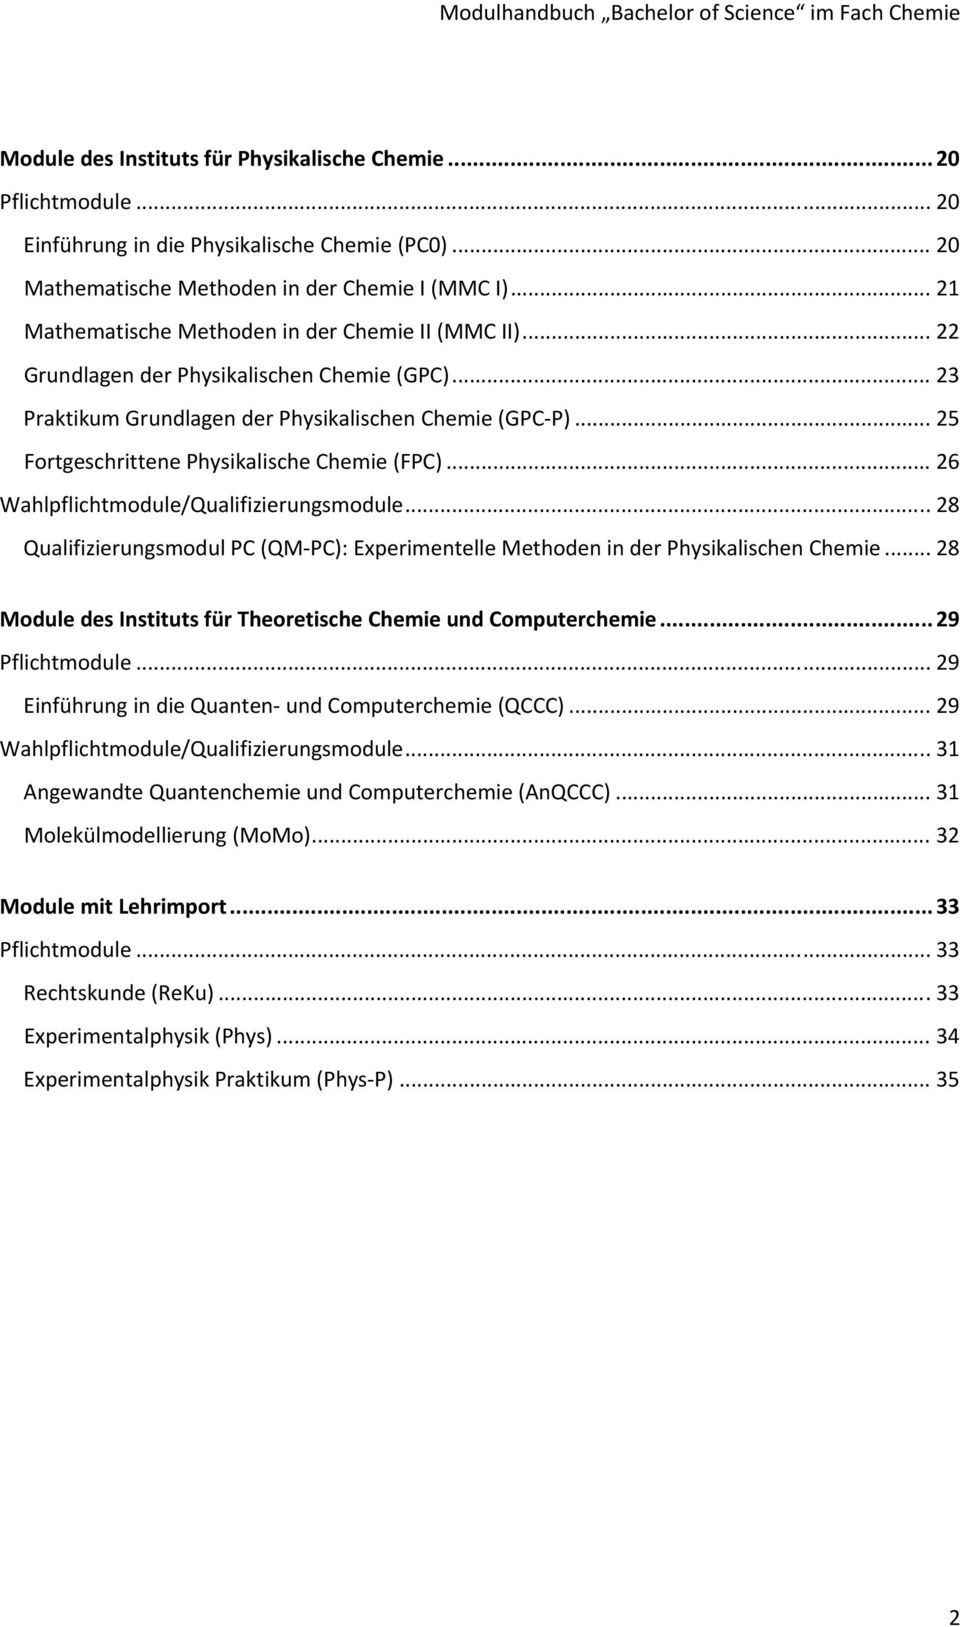 .. 25 Fortgeschrittene Physikalische Chemie (FPC)... 26 Wahlpflichtmodule/Qualifizierungsmodule... 28 Qualifizierungsmodul PC (QM PC): Experimentelle Methoden in der Physikalischen Chemie.